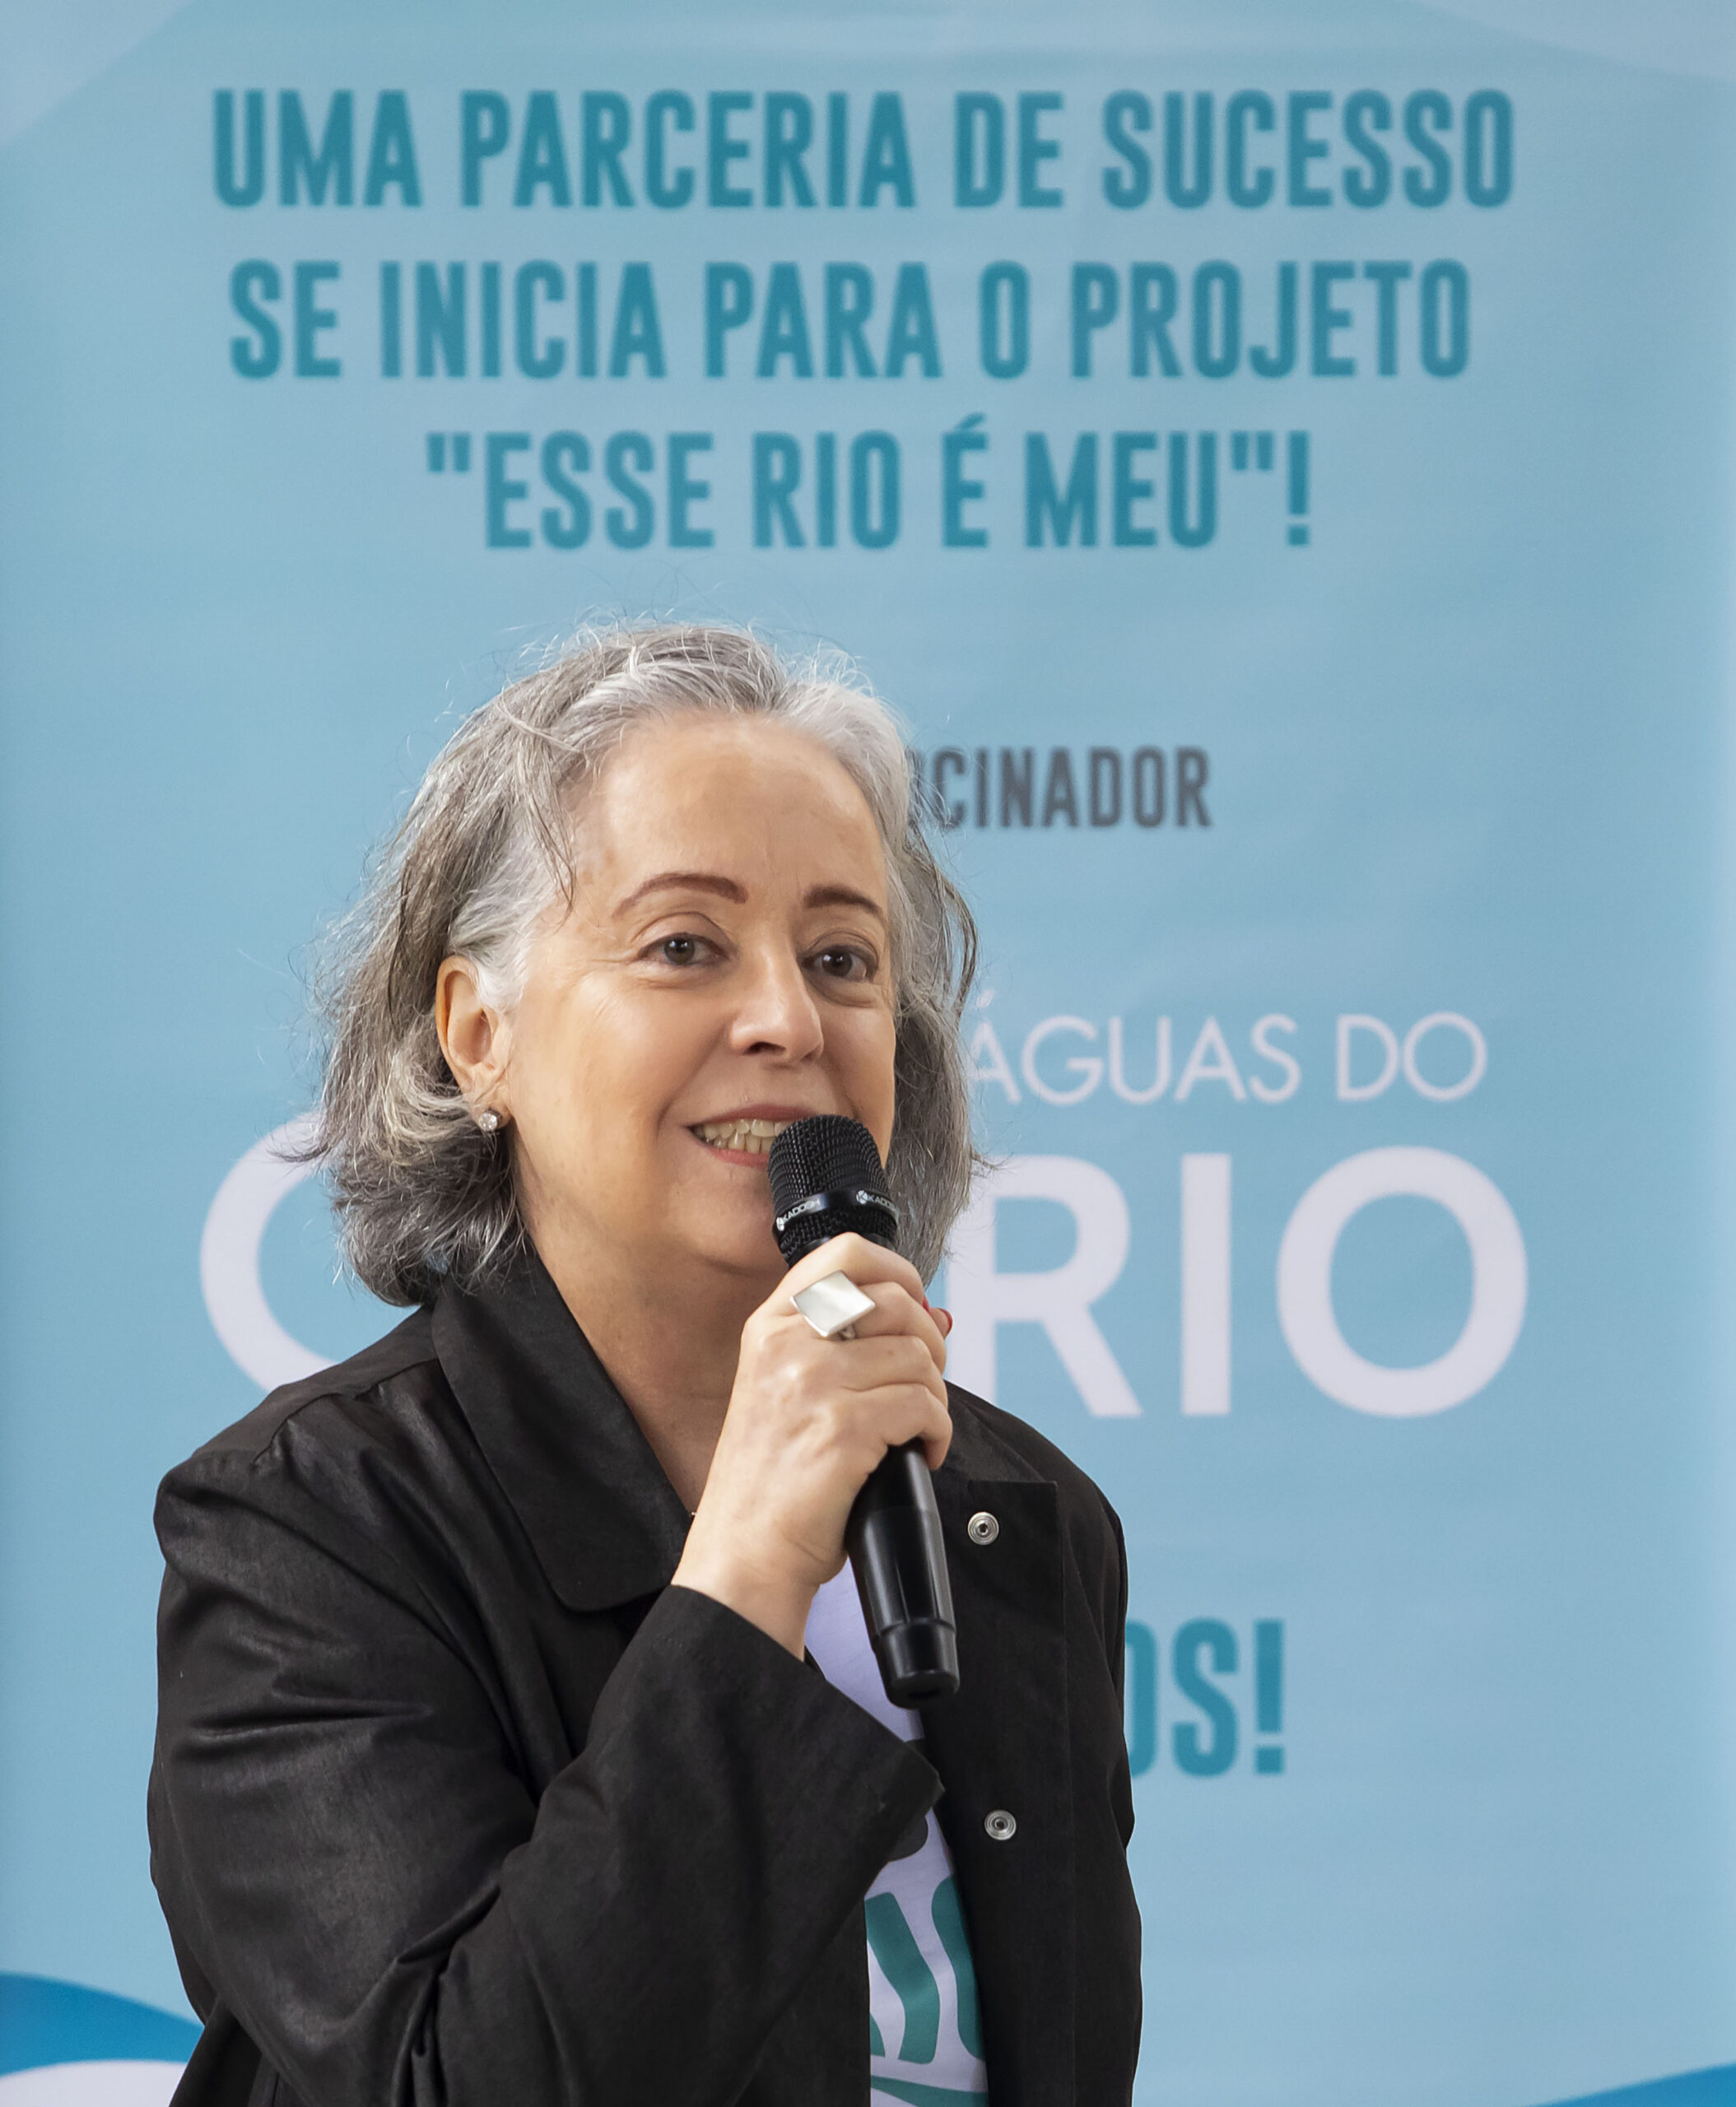 Esse Rio é Meu chega a todas as escolas da Prefeitura do Rio: parceria com professores, estudantes e suas famílias